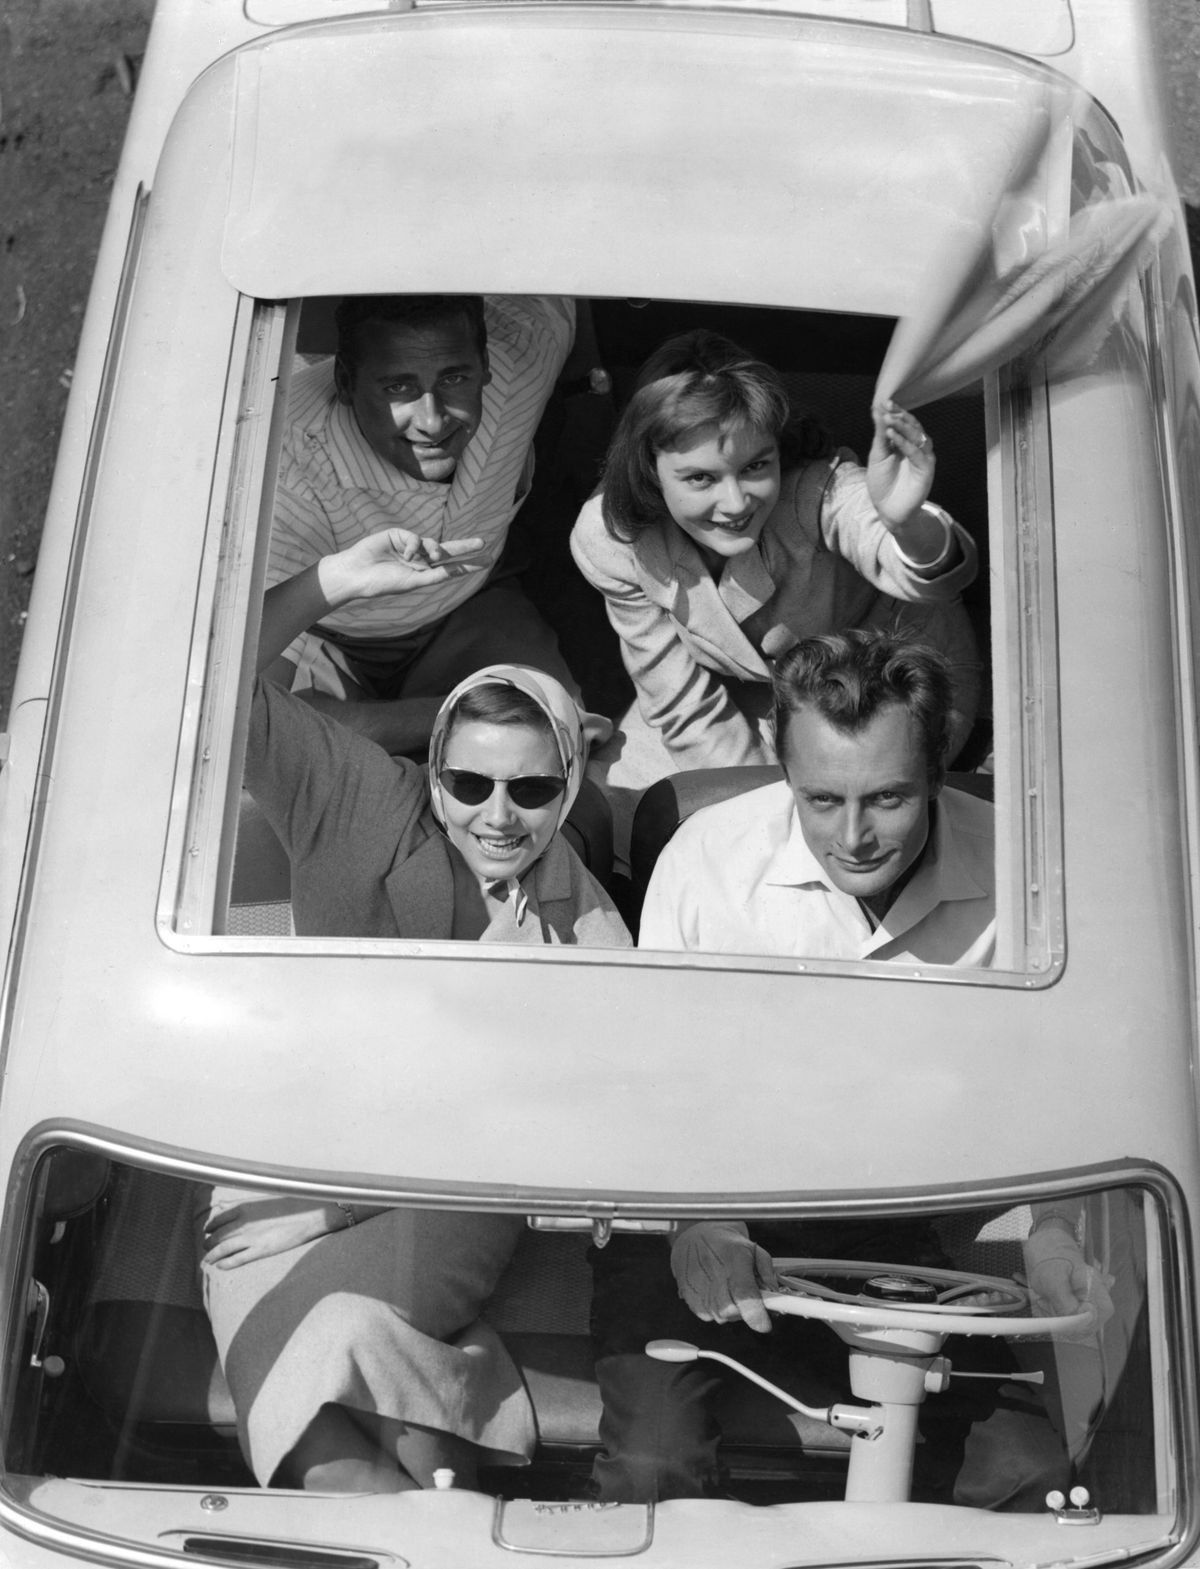 jonge mensen zwaaien vanuit de open cabriokap van de auto in de jaren 50